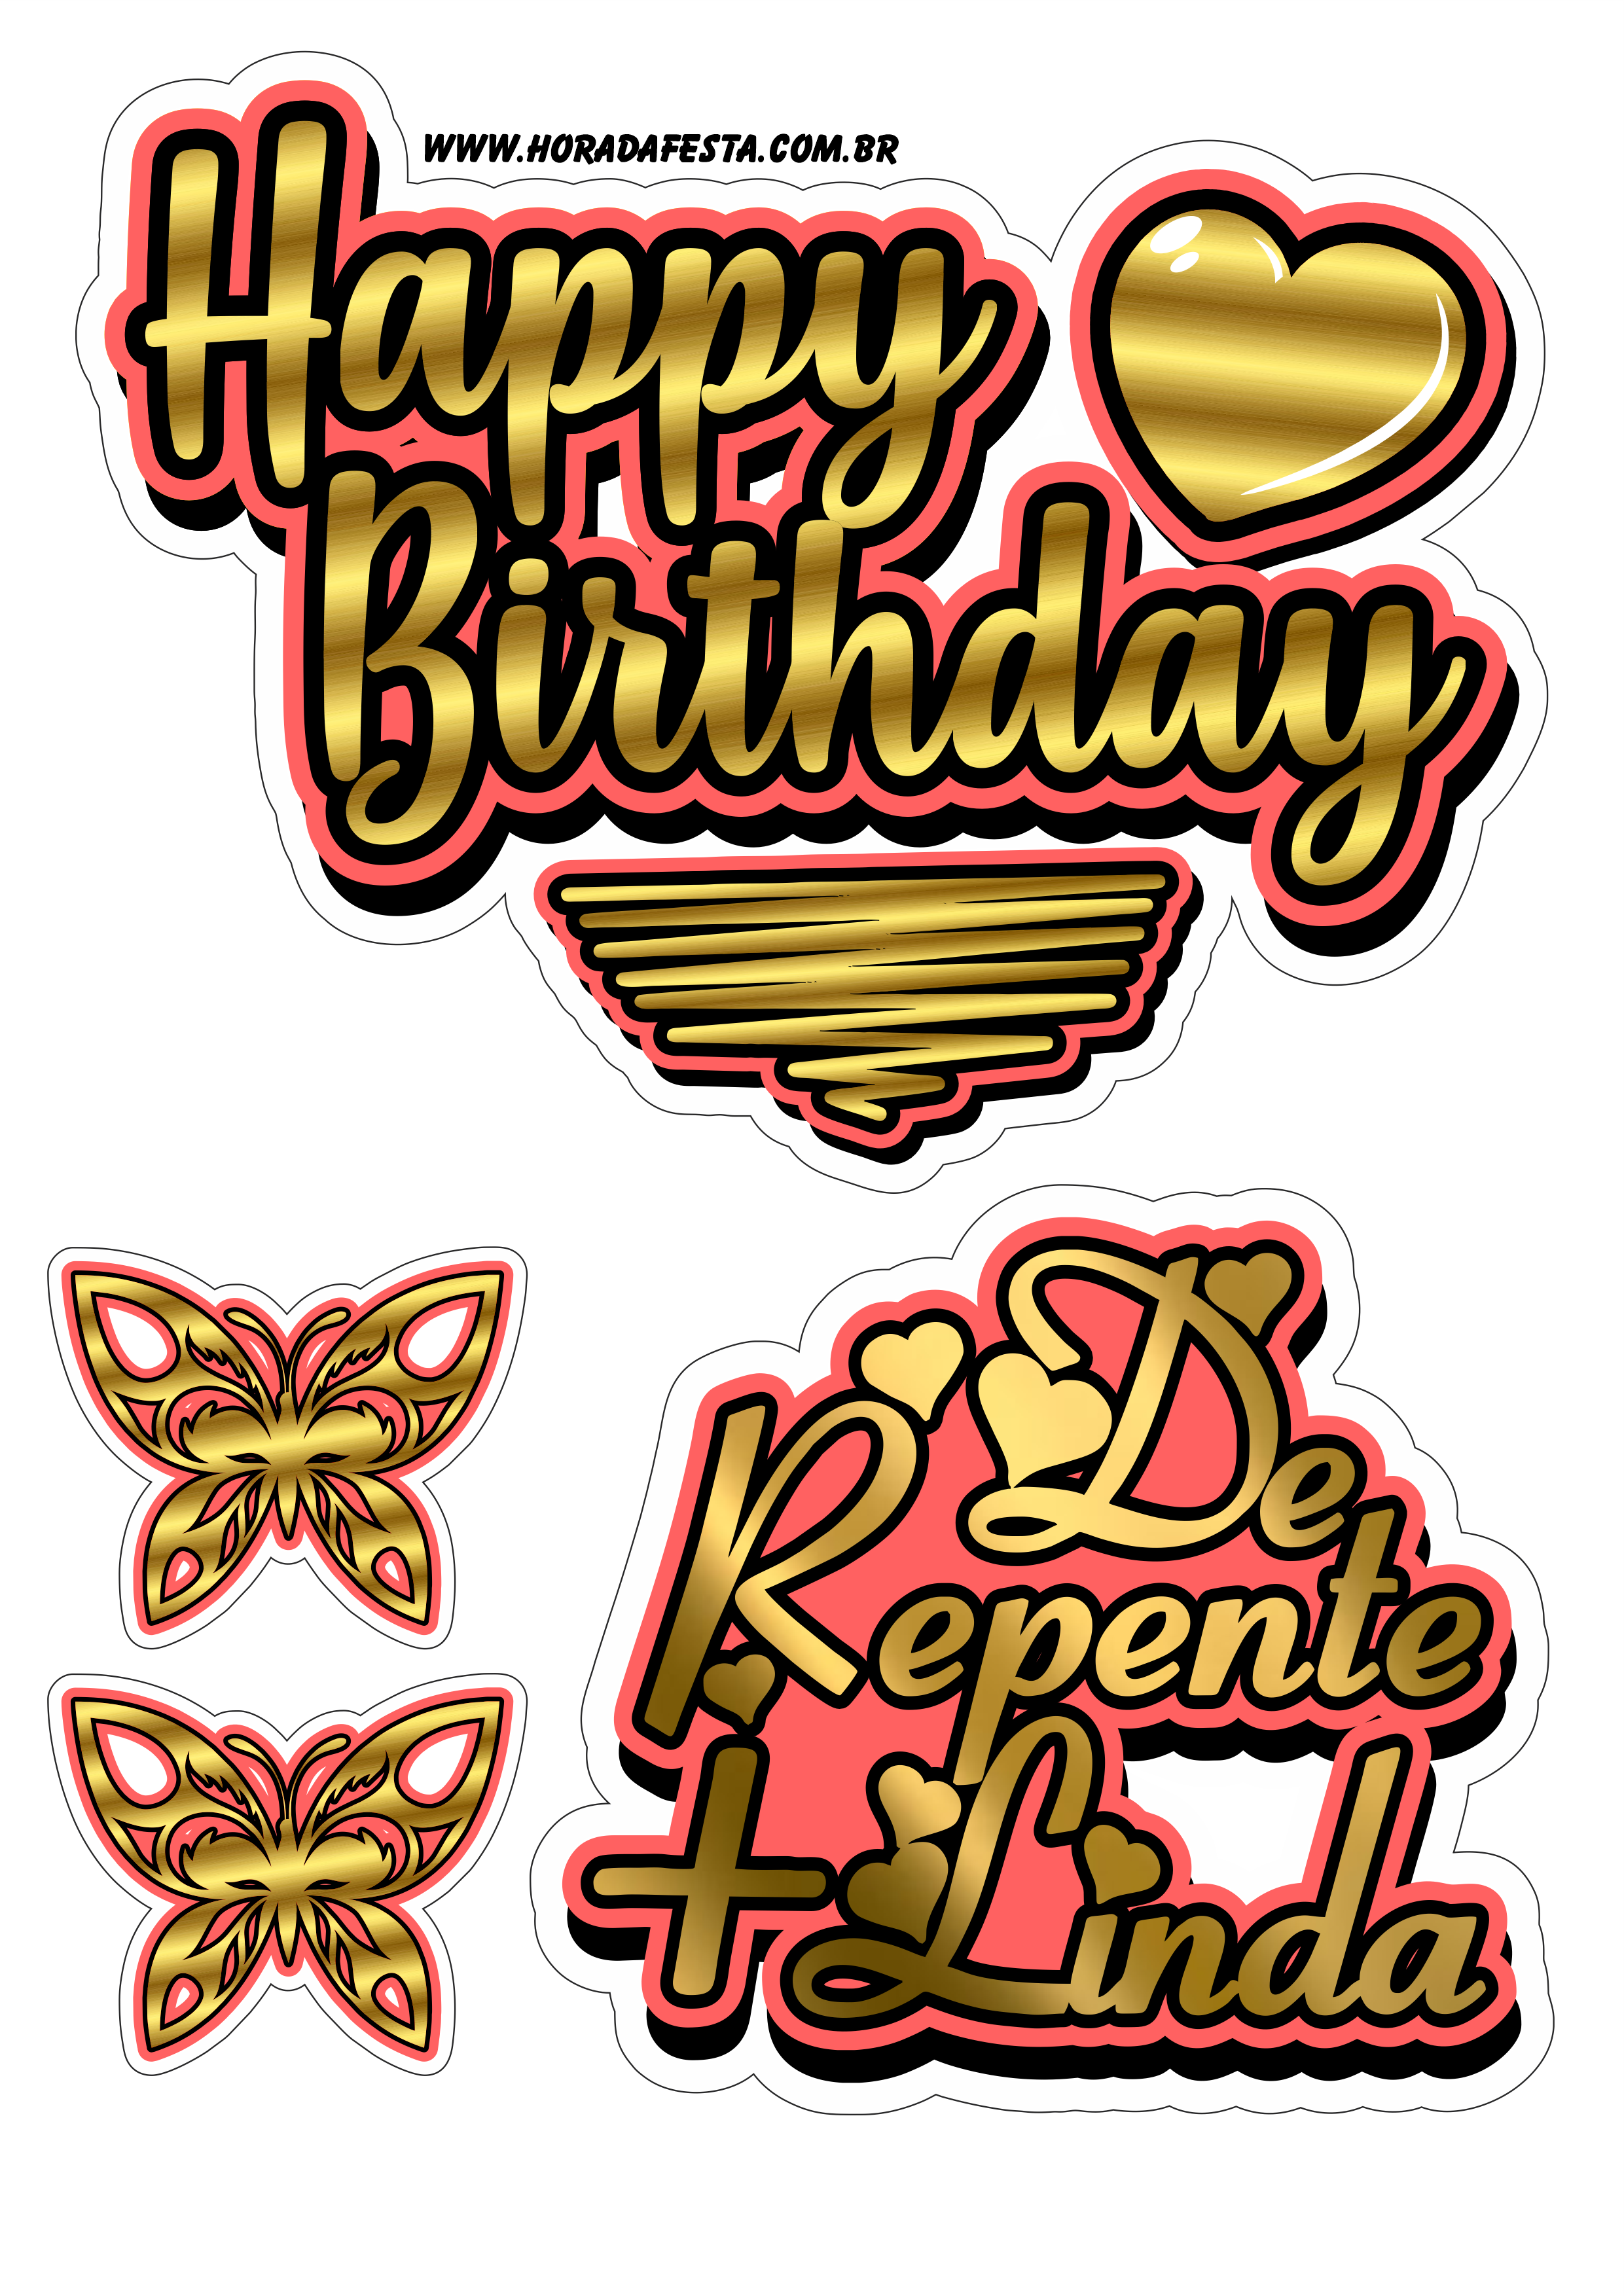 Happy Birthday dourado com vermelho topo de bolo de repente mais linda artes gráficas png